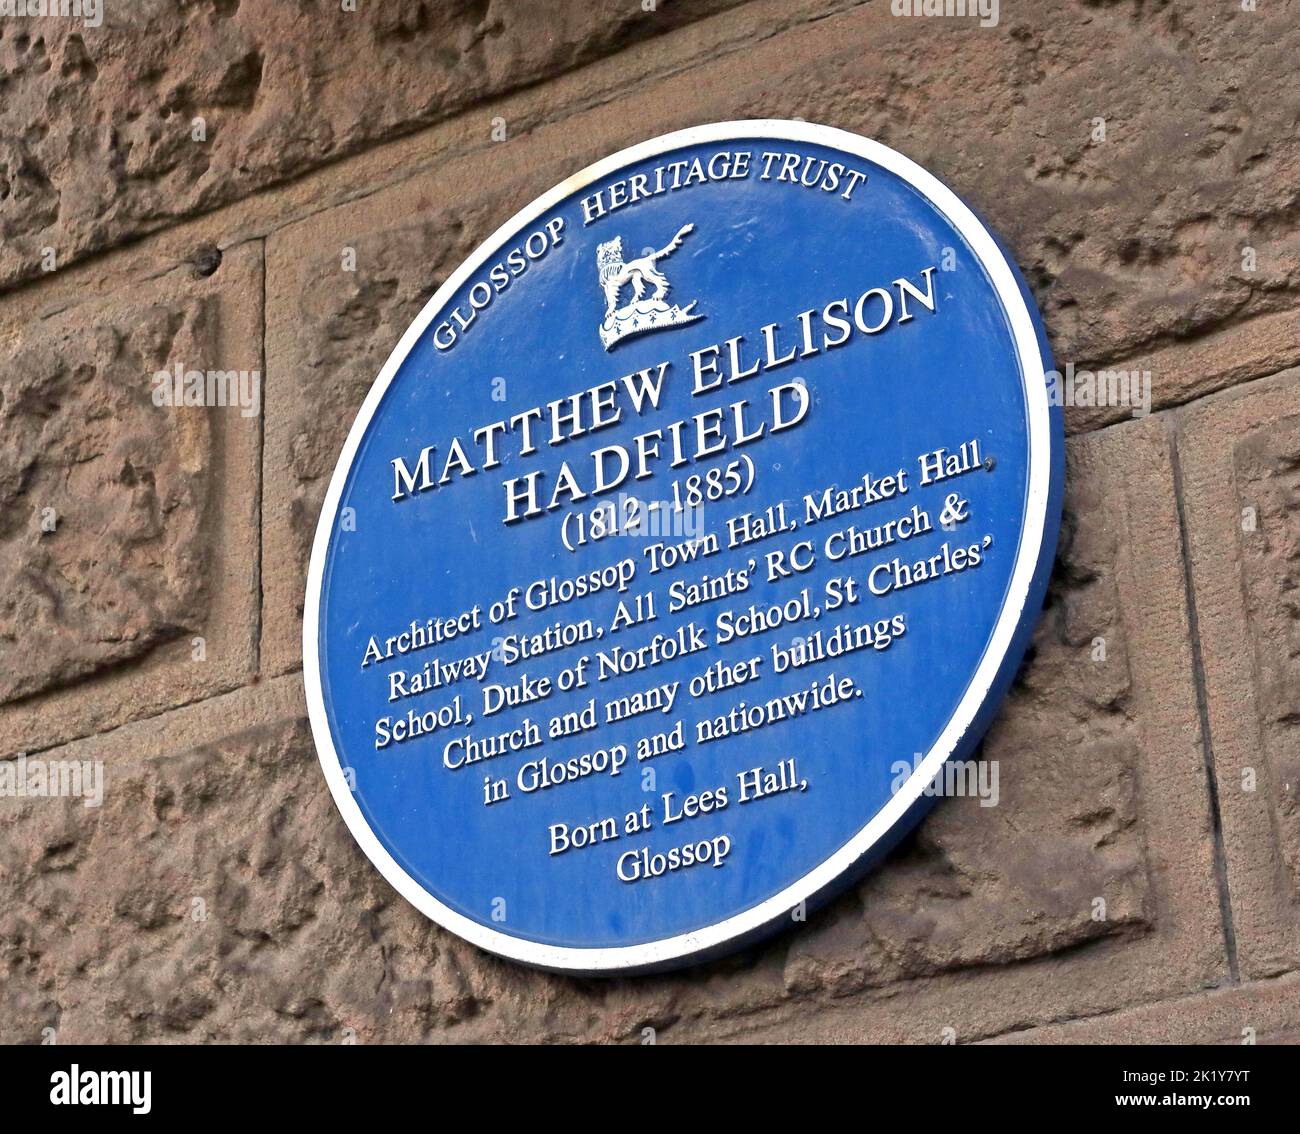 Blue Plaque, Glossop Heritage Trust, Matthew Ellison Hadfield, im Glossop Town Hall, High Peak, Derbys, England, Großbritannien, SK13 Stockfoto